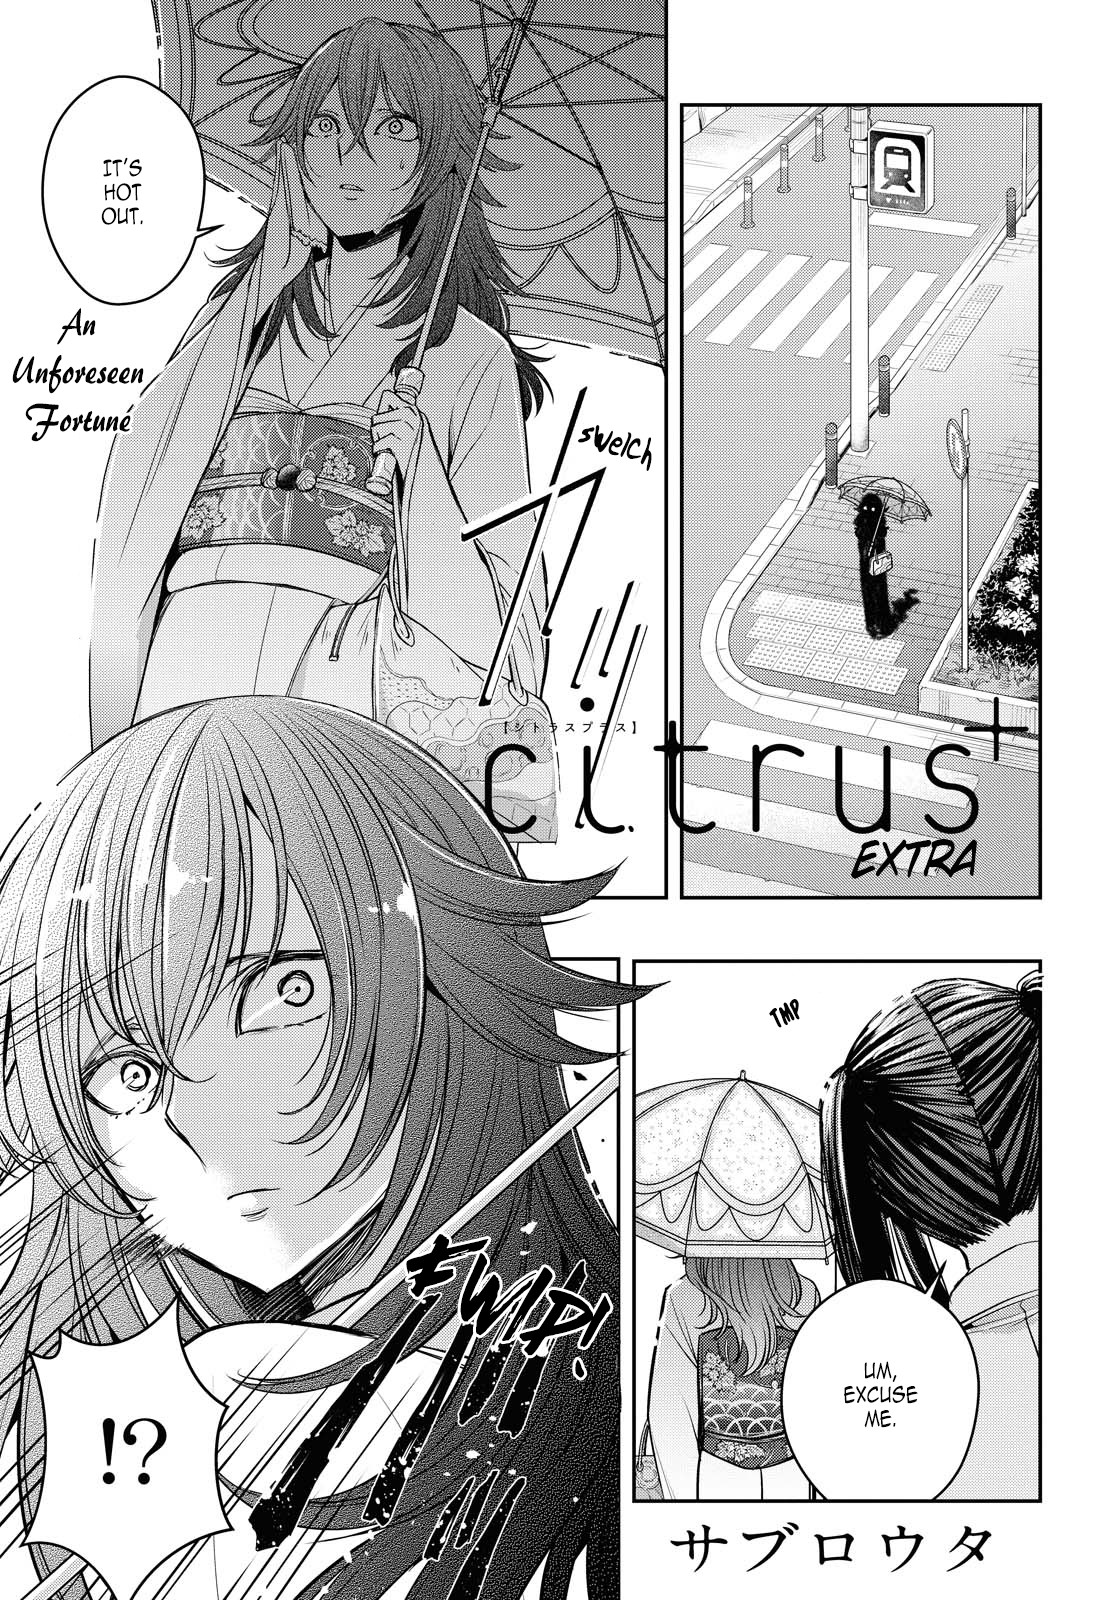 Citrus + - Page 1